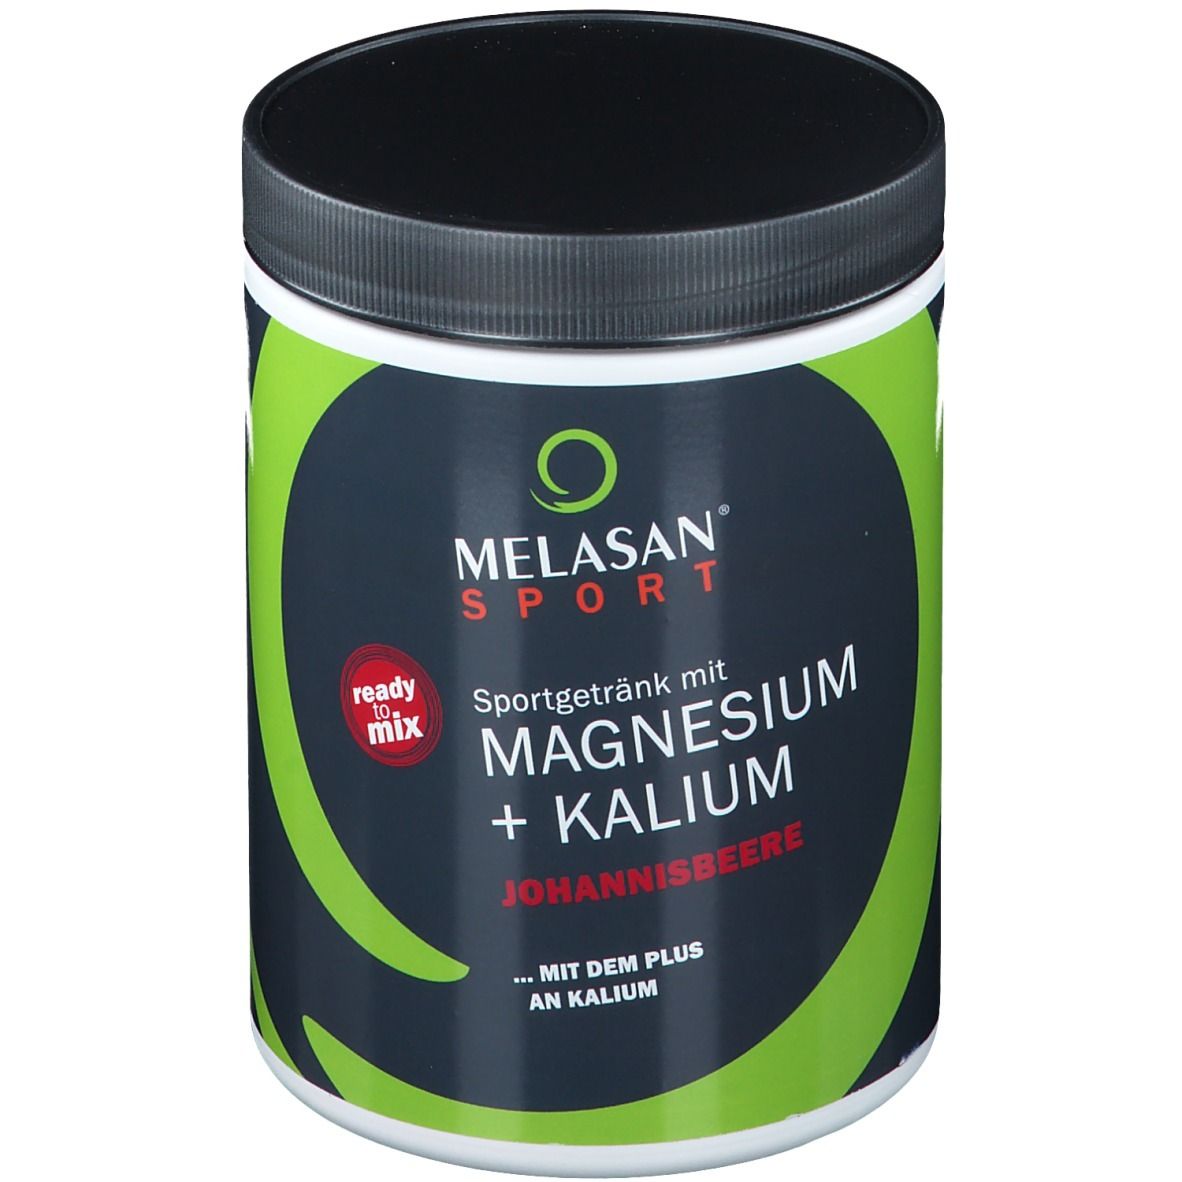 Melasan Sport® Sportgetränk mit Magnesium und Kalium Johannisbeere